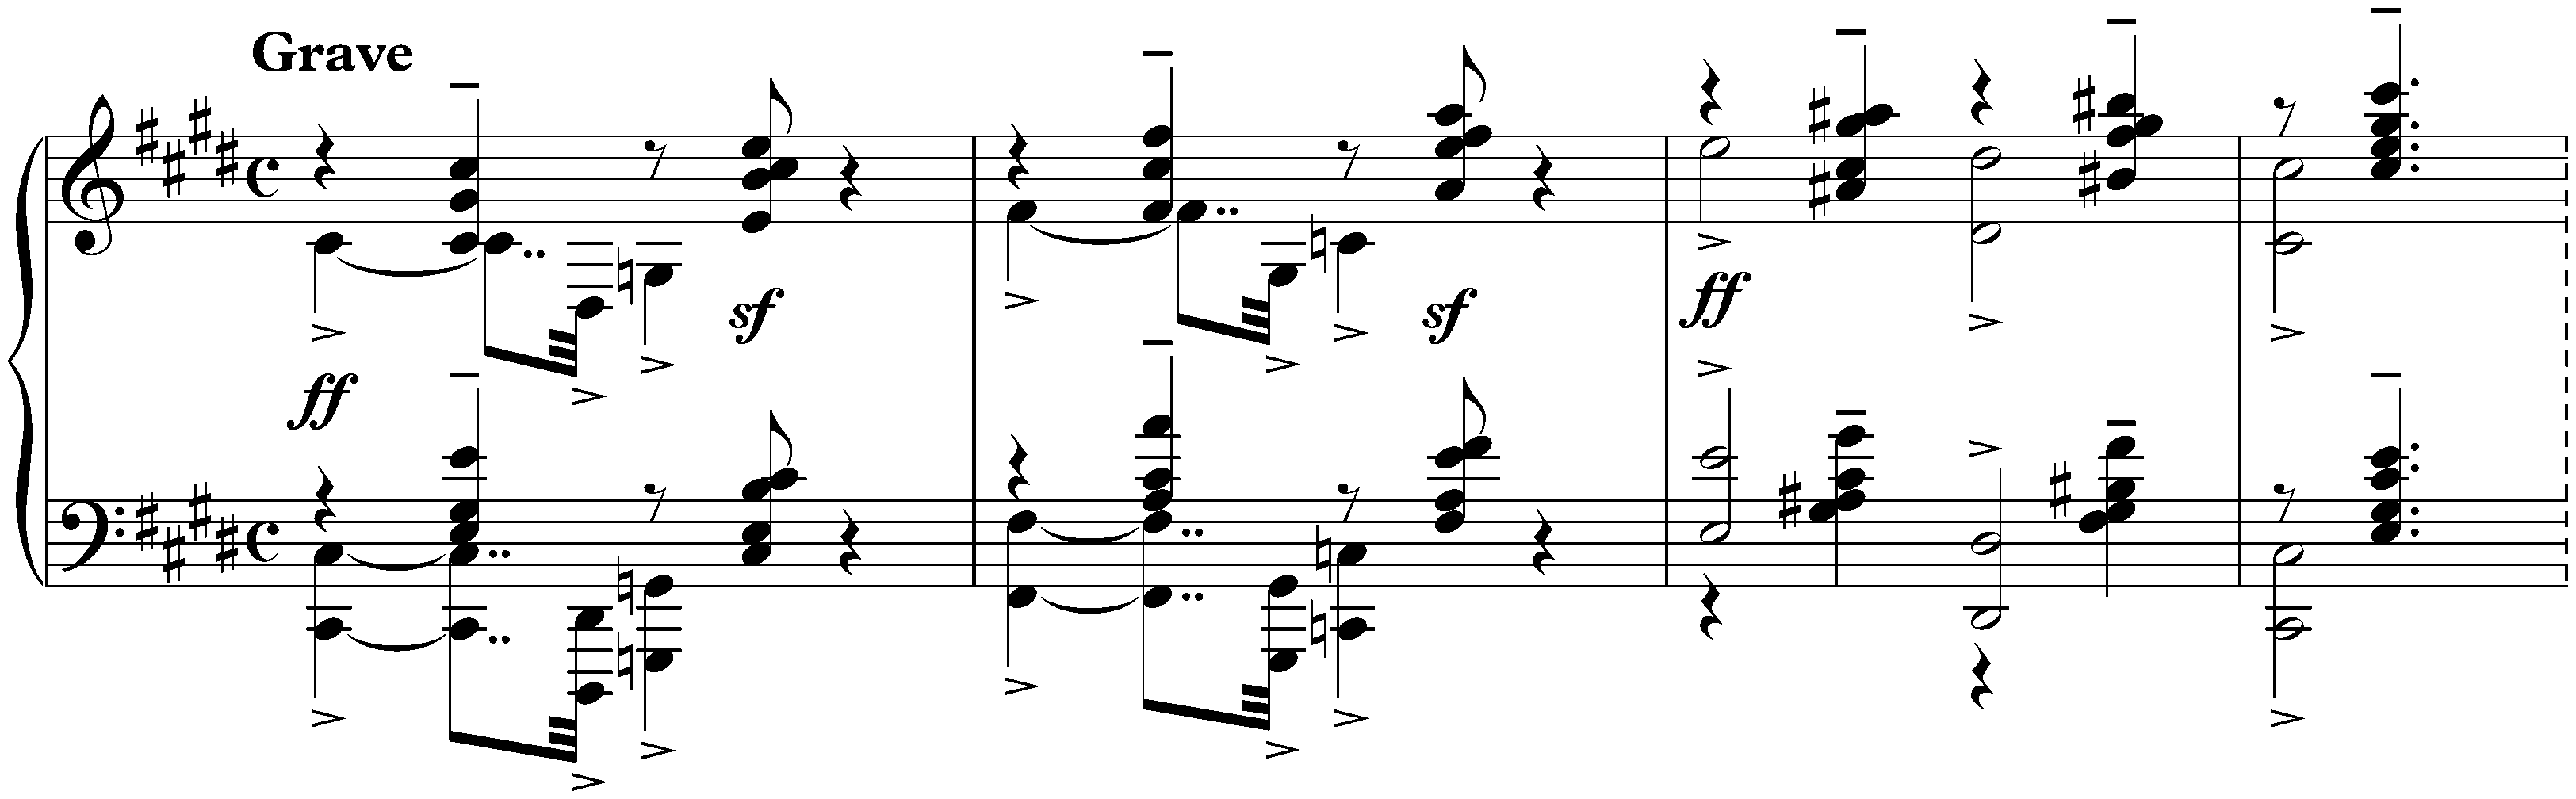 Études-tableaux, op. 33; 9. (6.) C-sharp minor